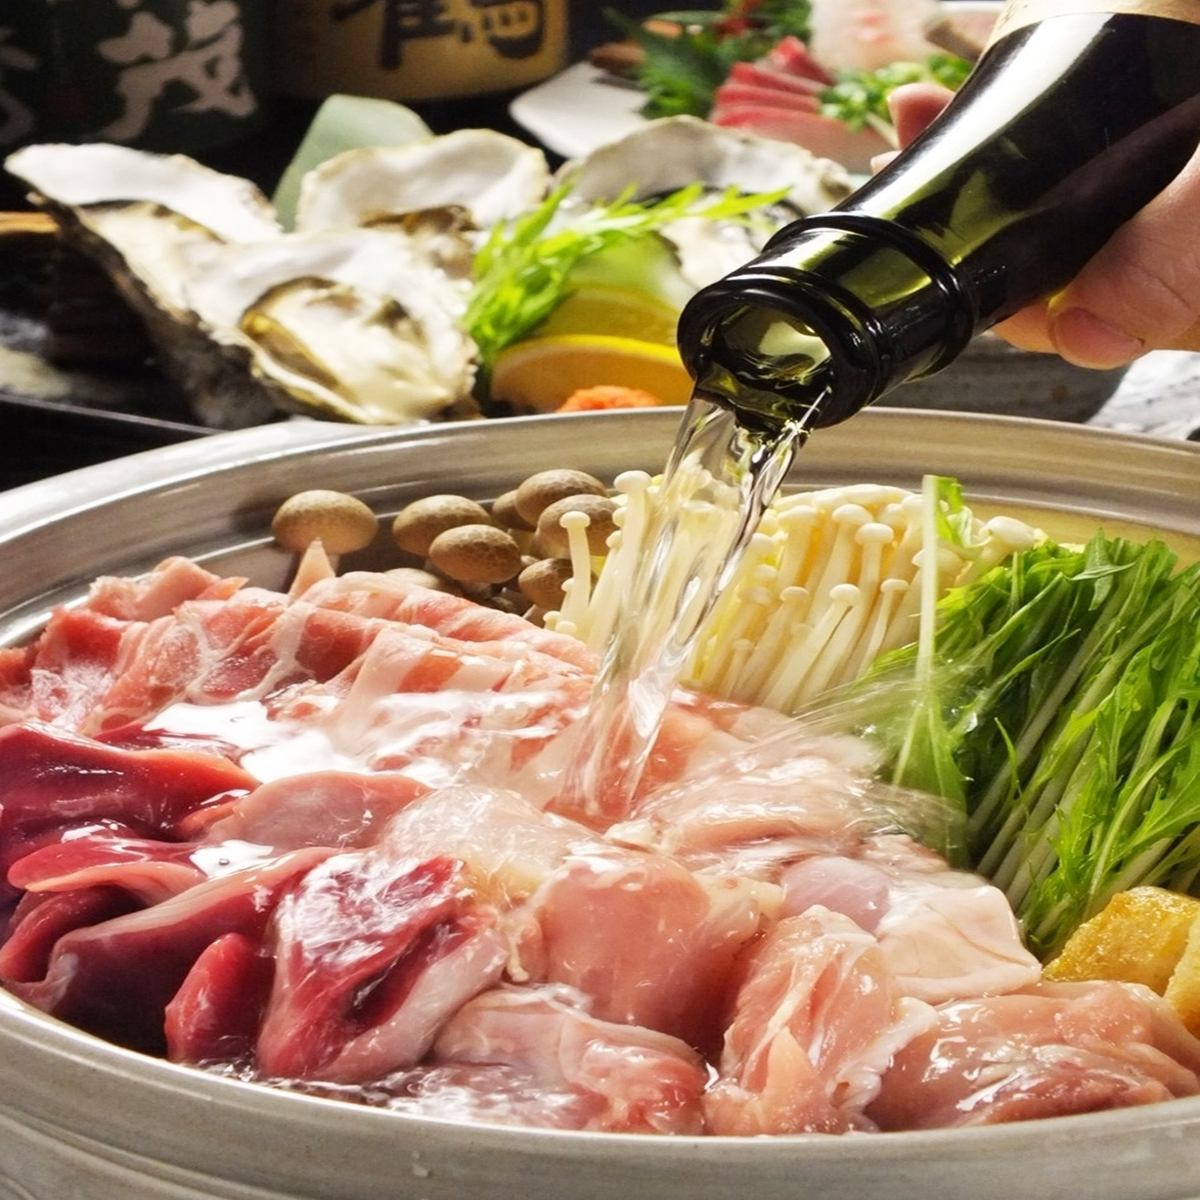 對於歡迎和歡送會♪廣島食材精心挑選的當然2H全友暢飲包括當地清酒8種菜餚4500日元